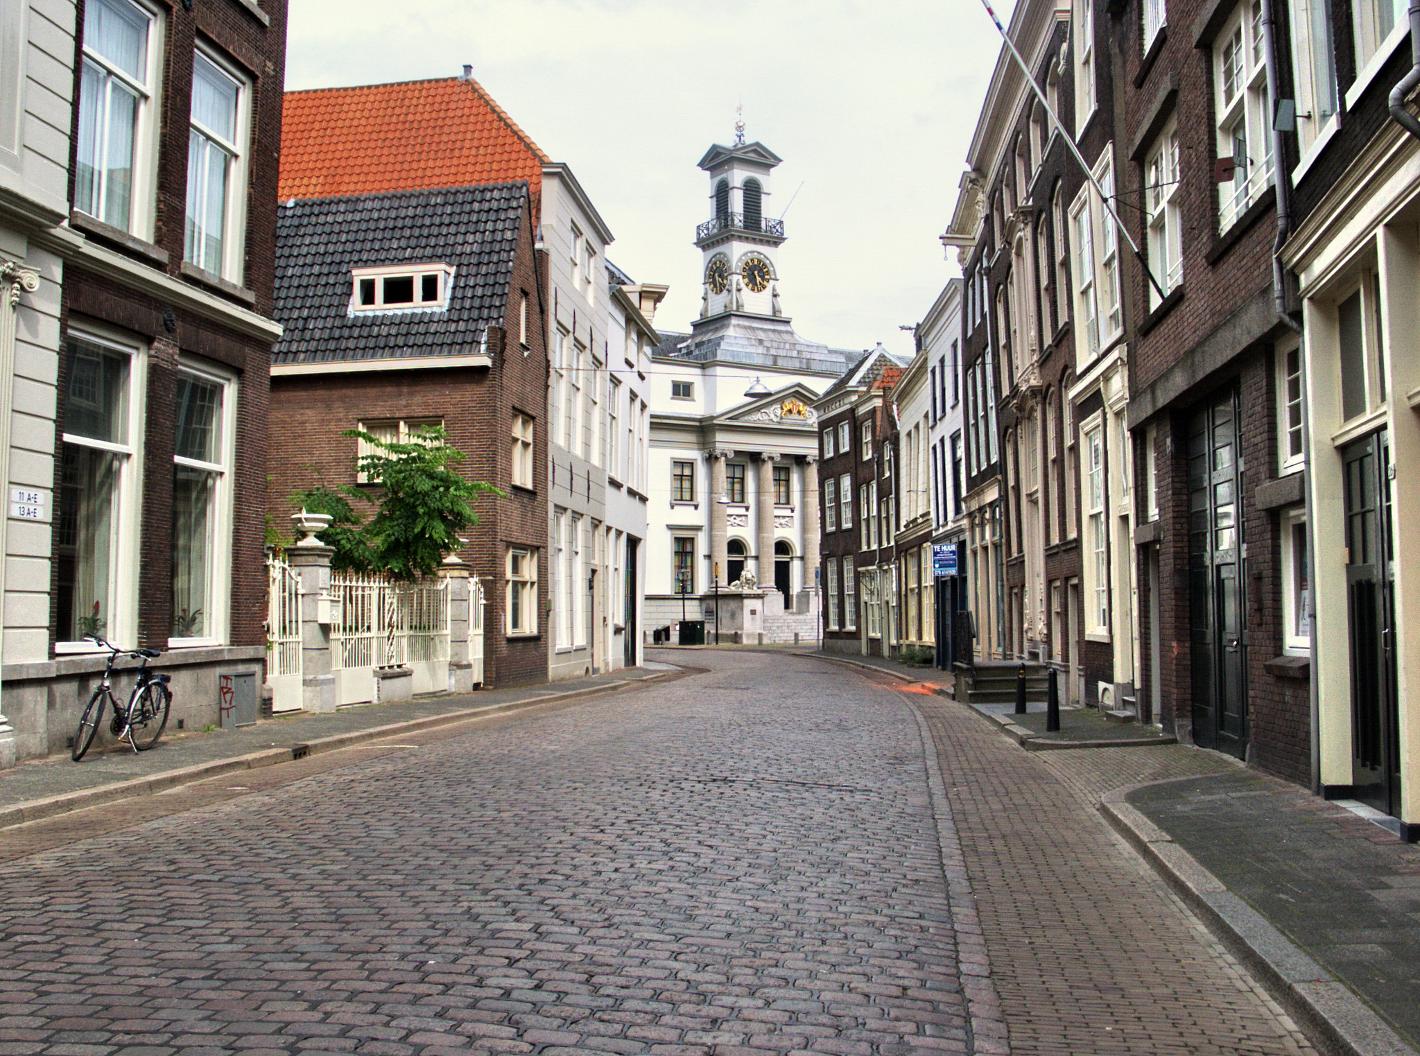 Foto Stadhuis in Dordrecht, Aussicht, Sehenswürdigkeiten & wahrzeichen - #1